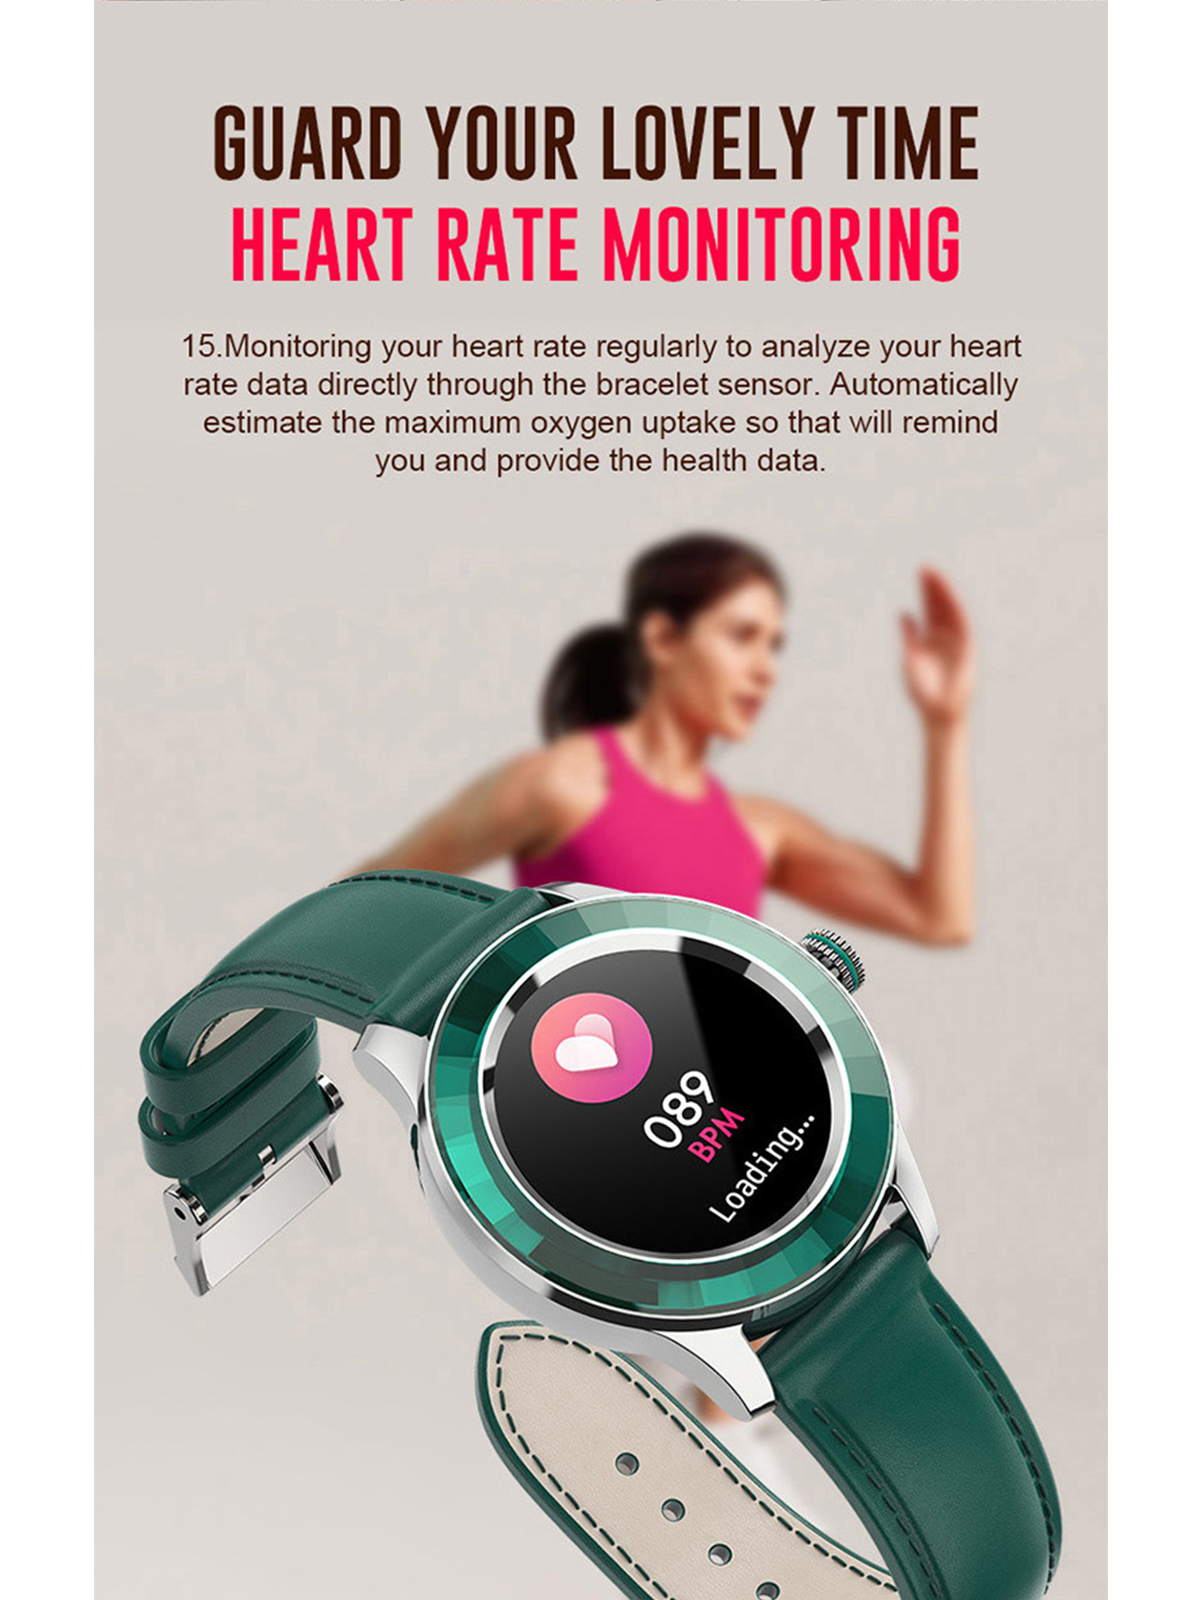 Grün Frauen Display IP67 Gesundheitsarmband Leder, Wasserdicht Smartwatch Rundes BRIGHTAKE Smartwatch